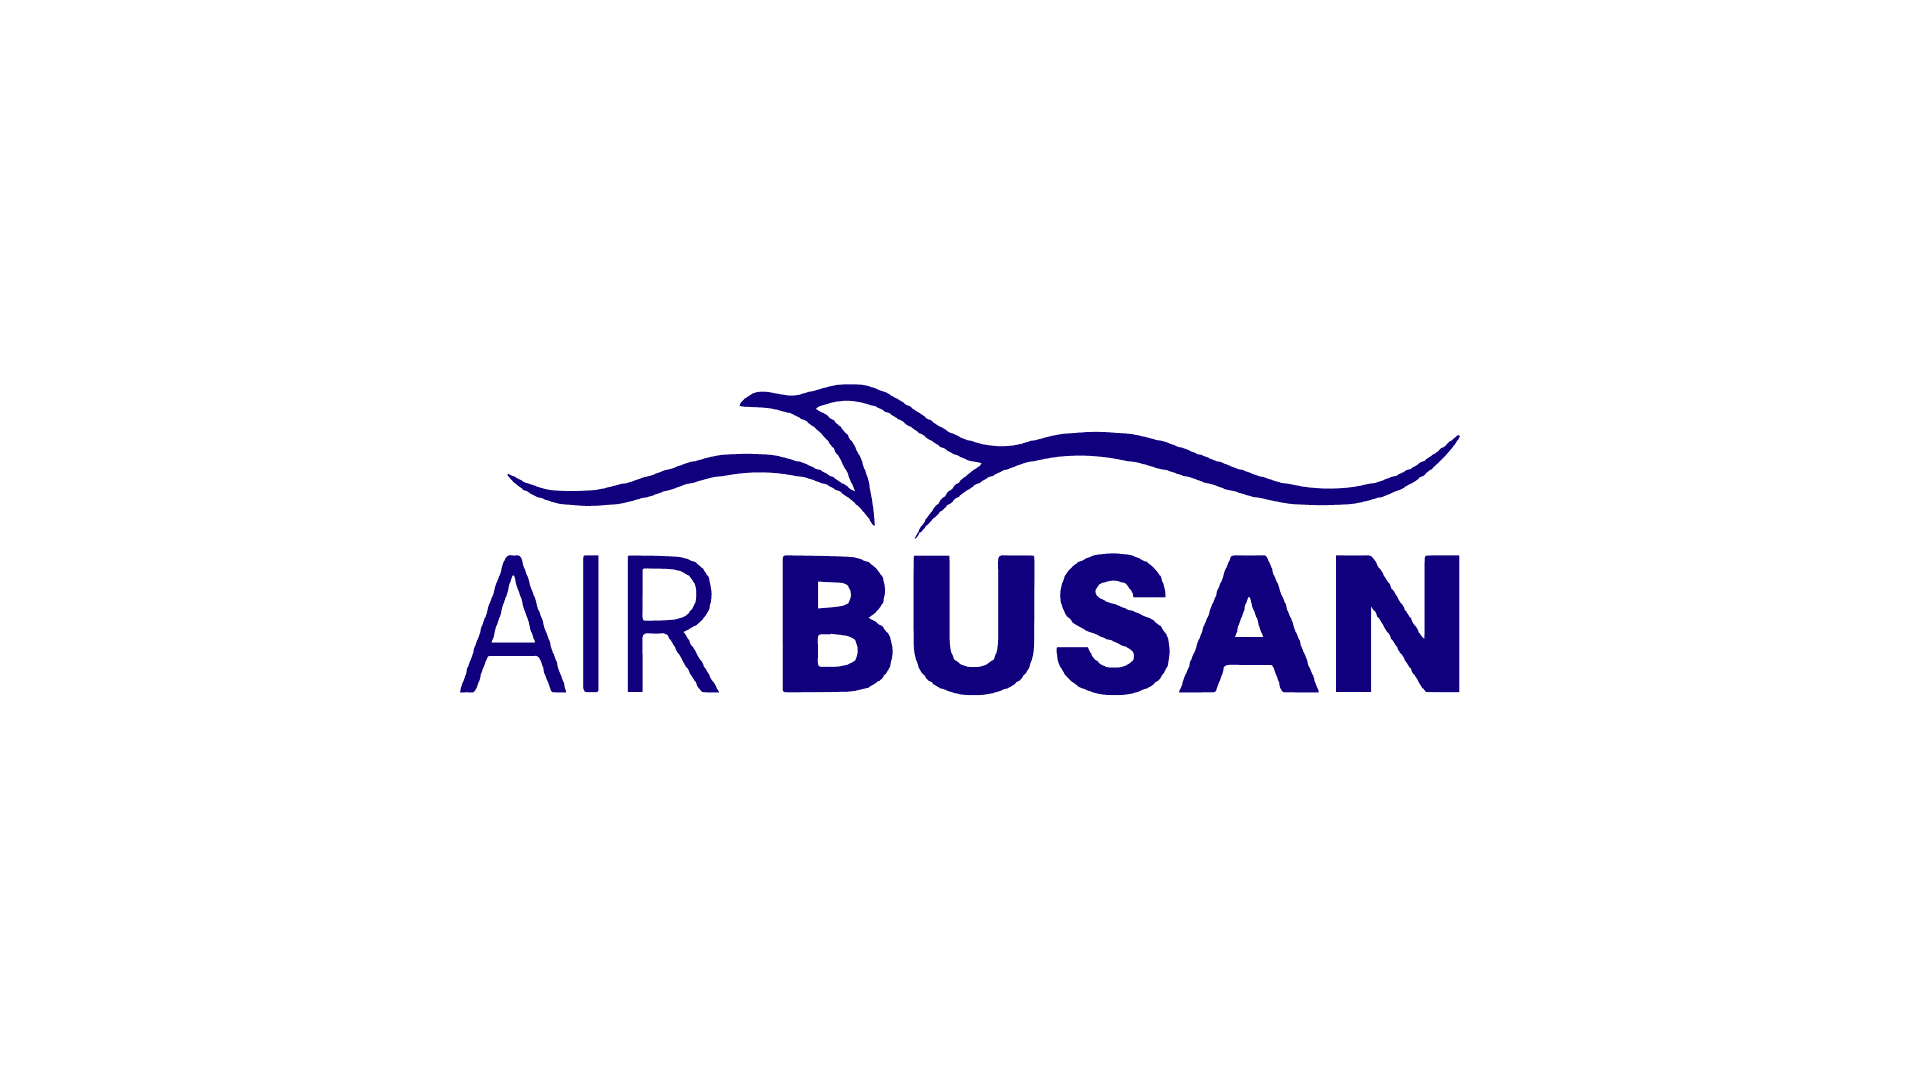 釜山航空 Air Busan 韓國早鳥優惠方案1300元起便宜旅遊南韓 2018.08 Air Busan Aircraft LCC South Koera Logo